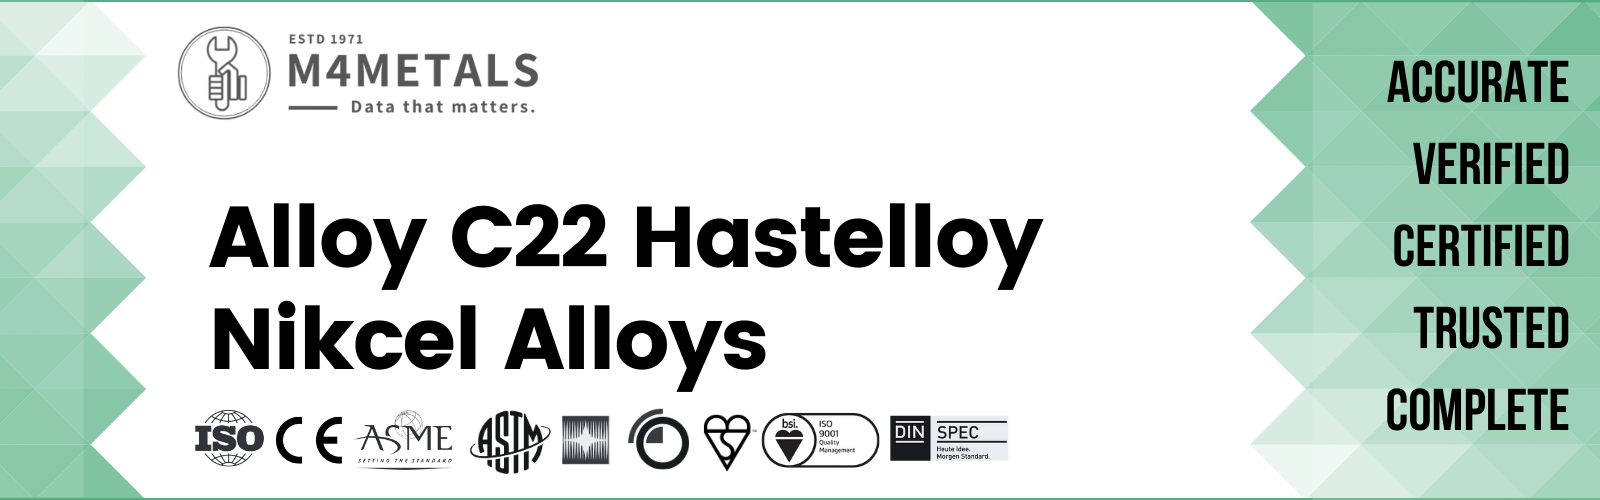 Hastelloy Alloy C22